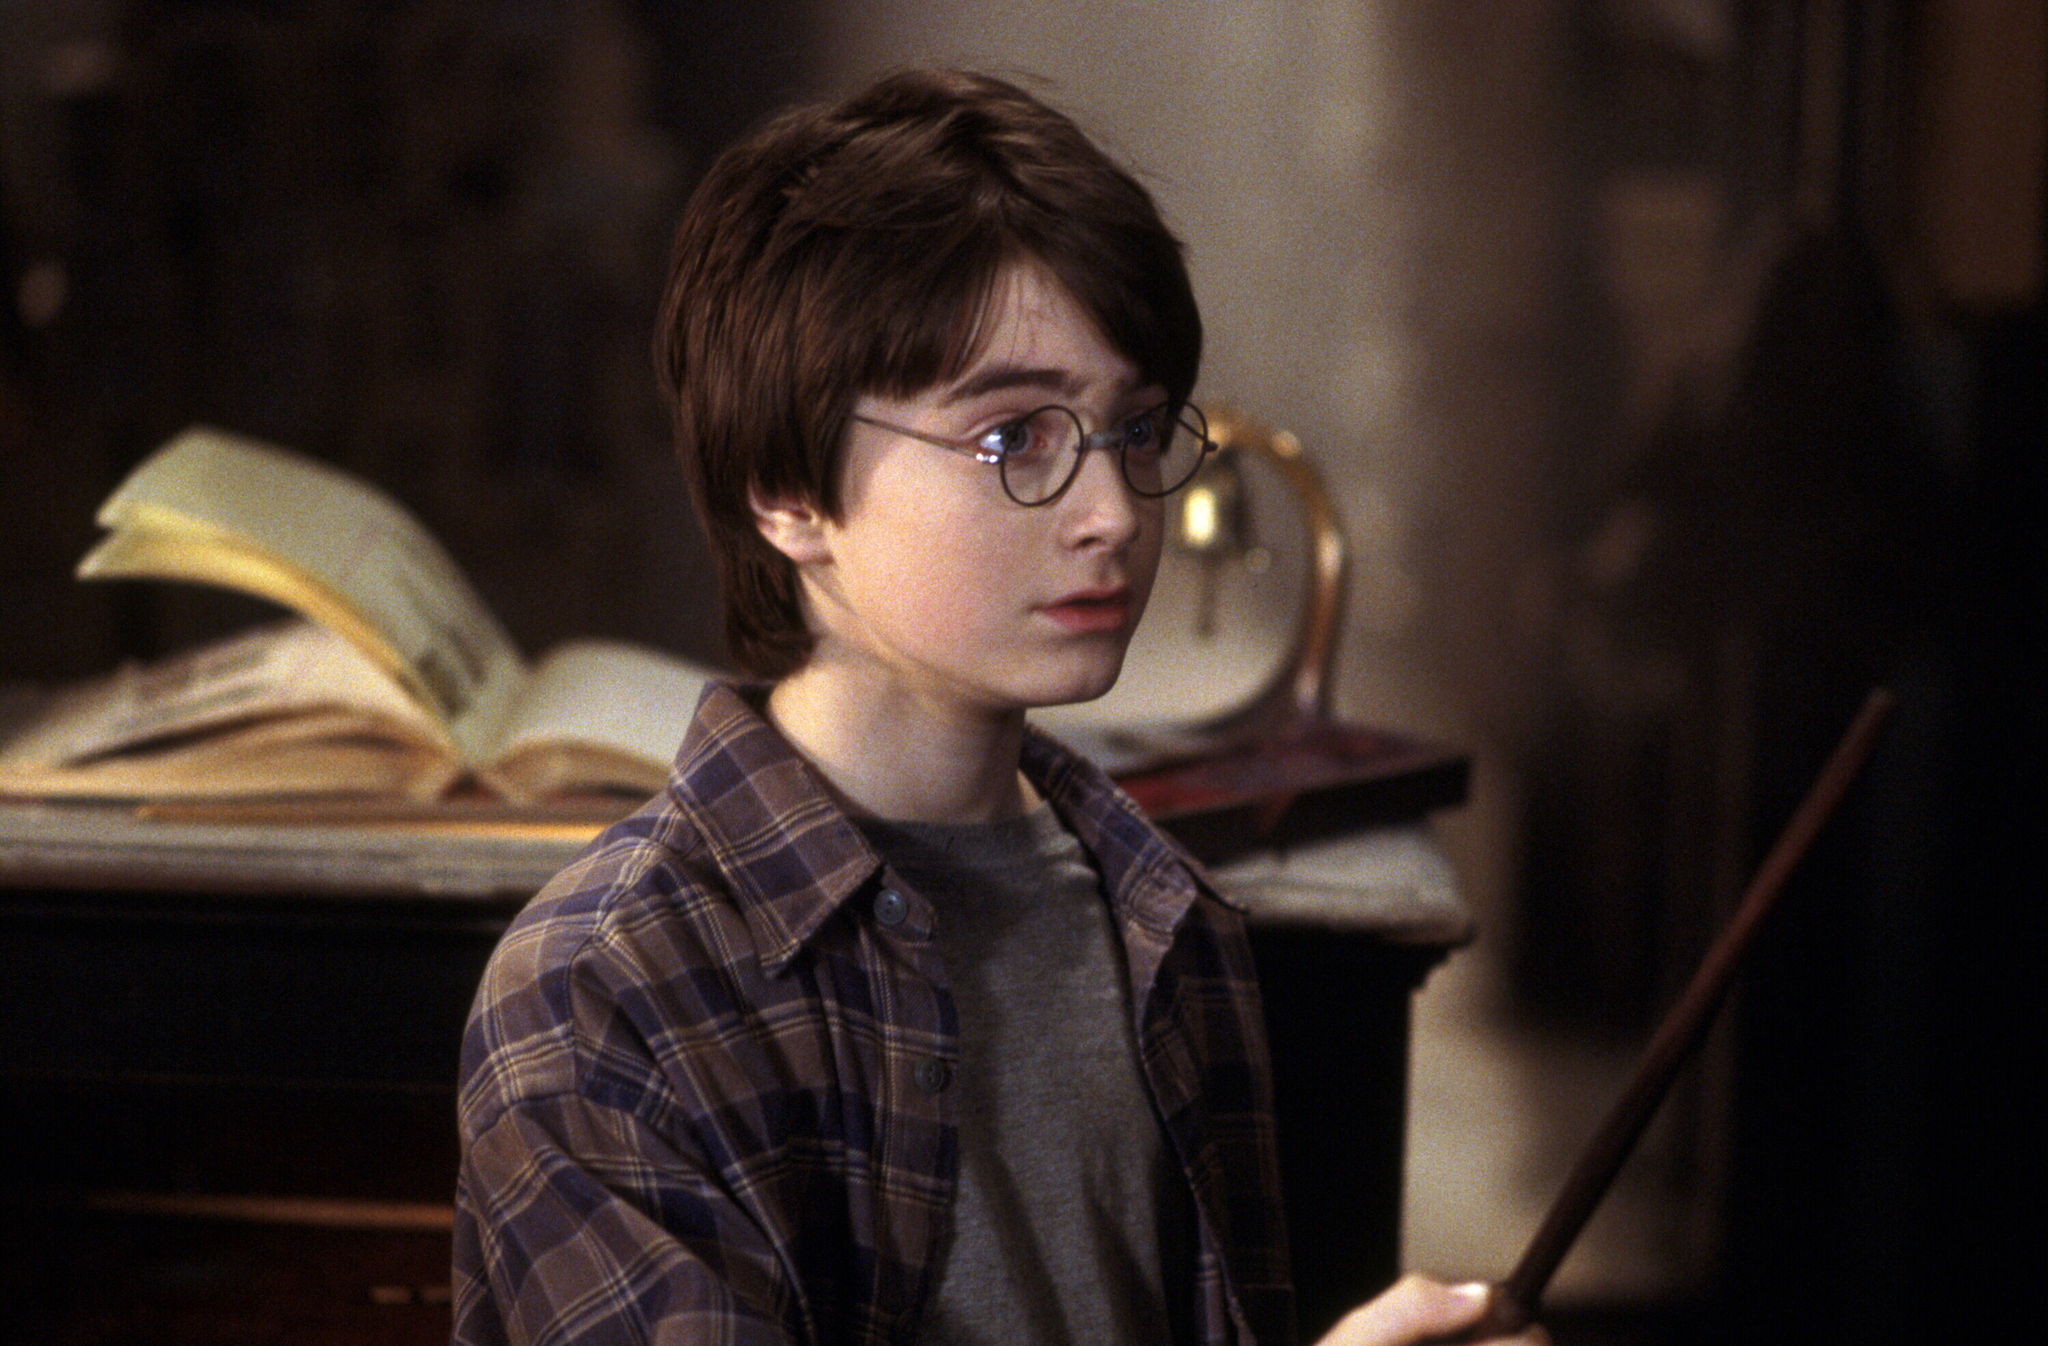 Službeno je: Stiže serija o Harryju Potteru s novom glumačkom ekipom